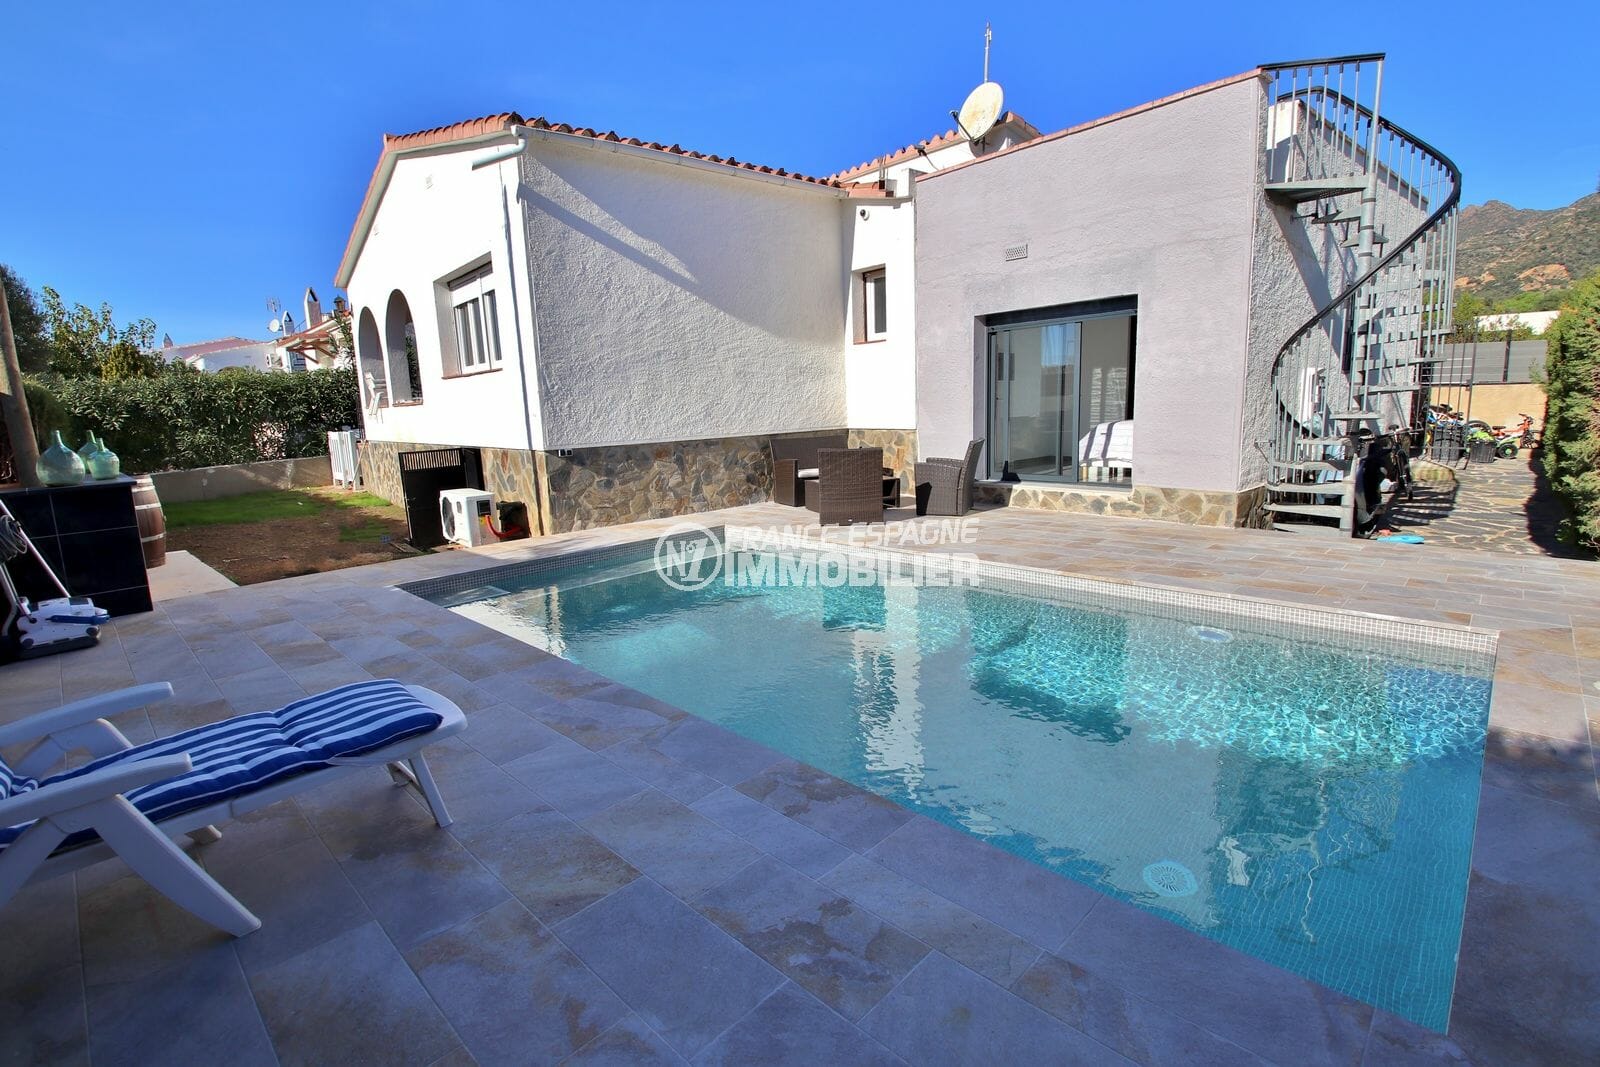 maison a vendre rosas: villa 140 m² sur terrain de 407 m², terrasse solarium vue mer, piscine, garage,